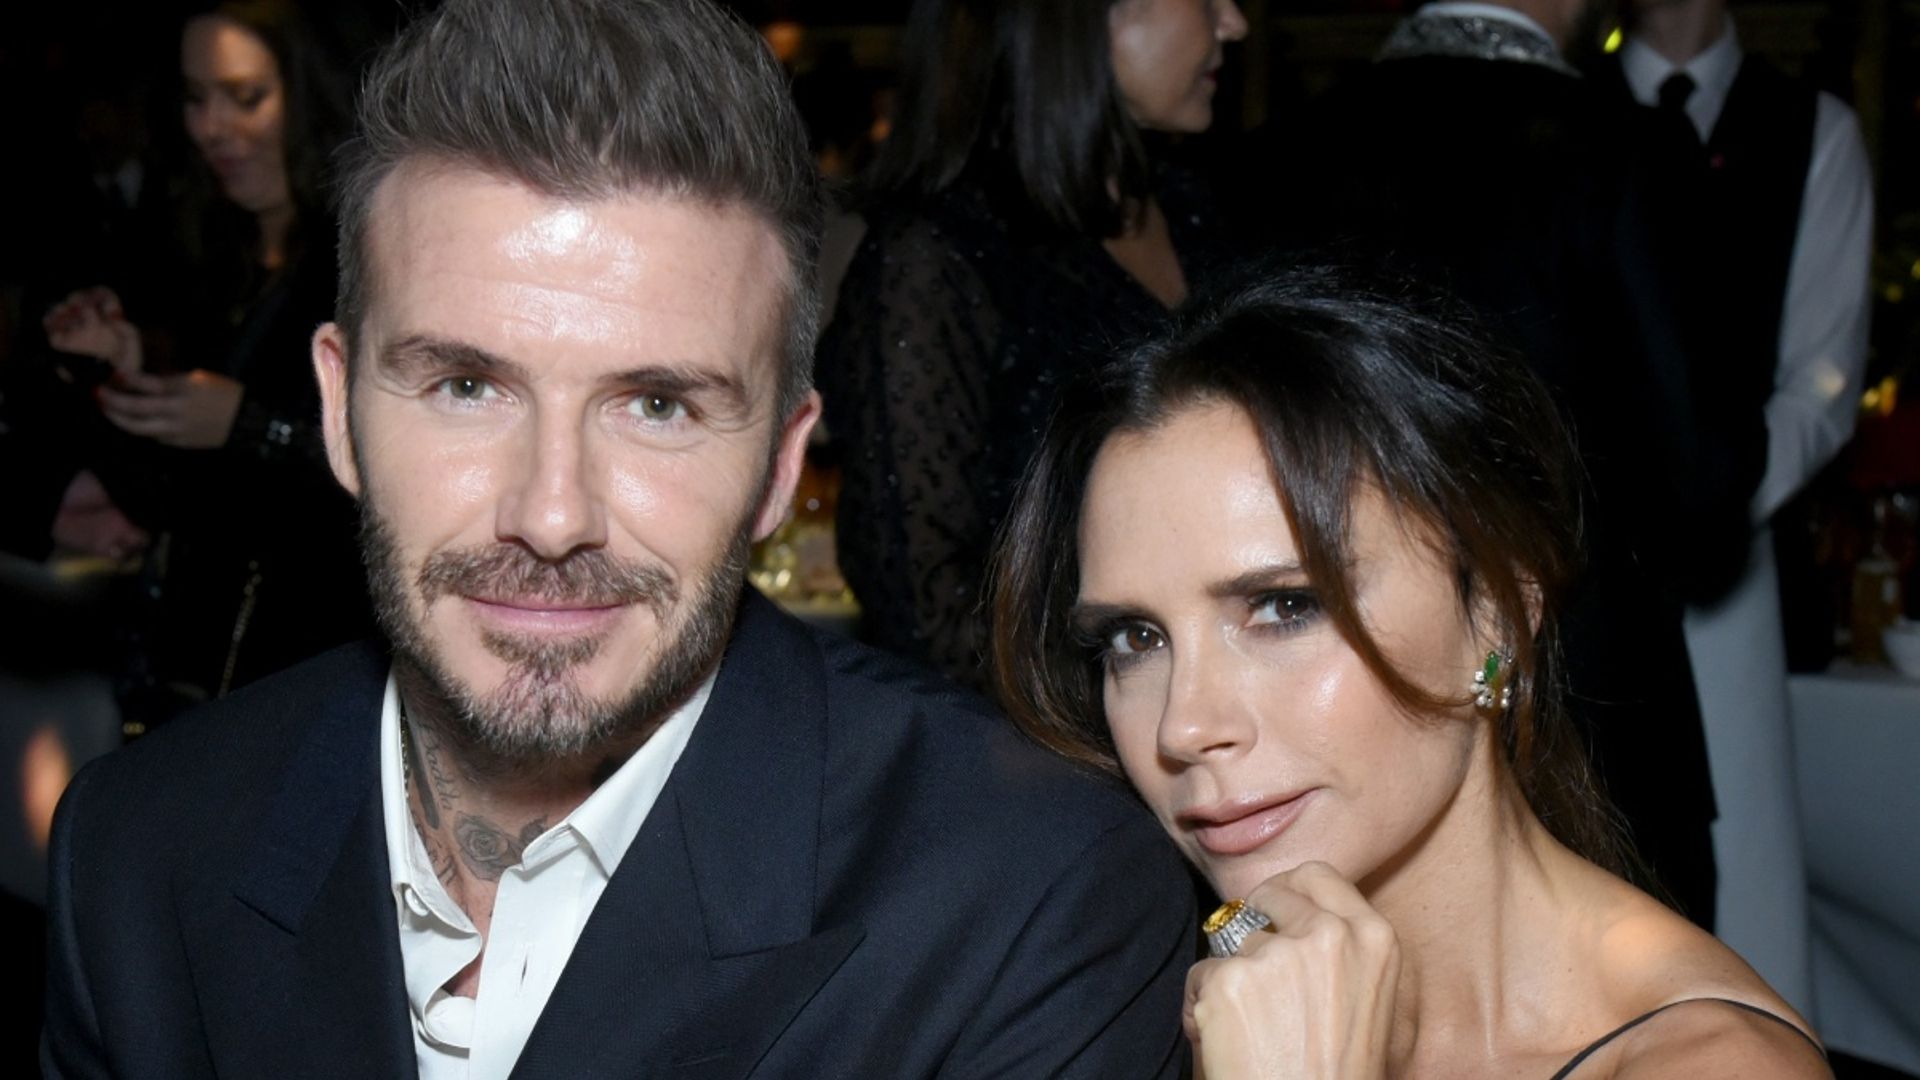 Victoria Beckham shares heartfelt message from 'proud' husband David ...